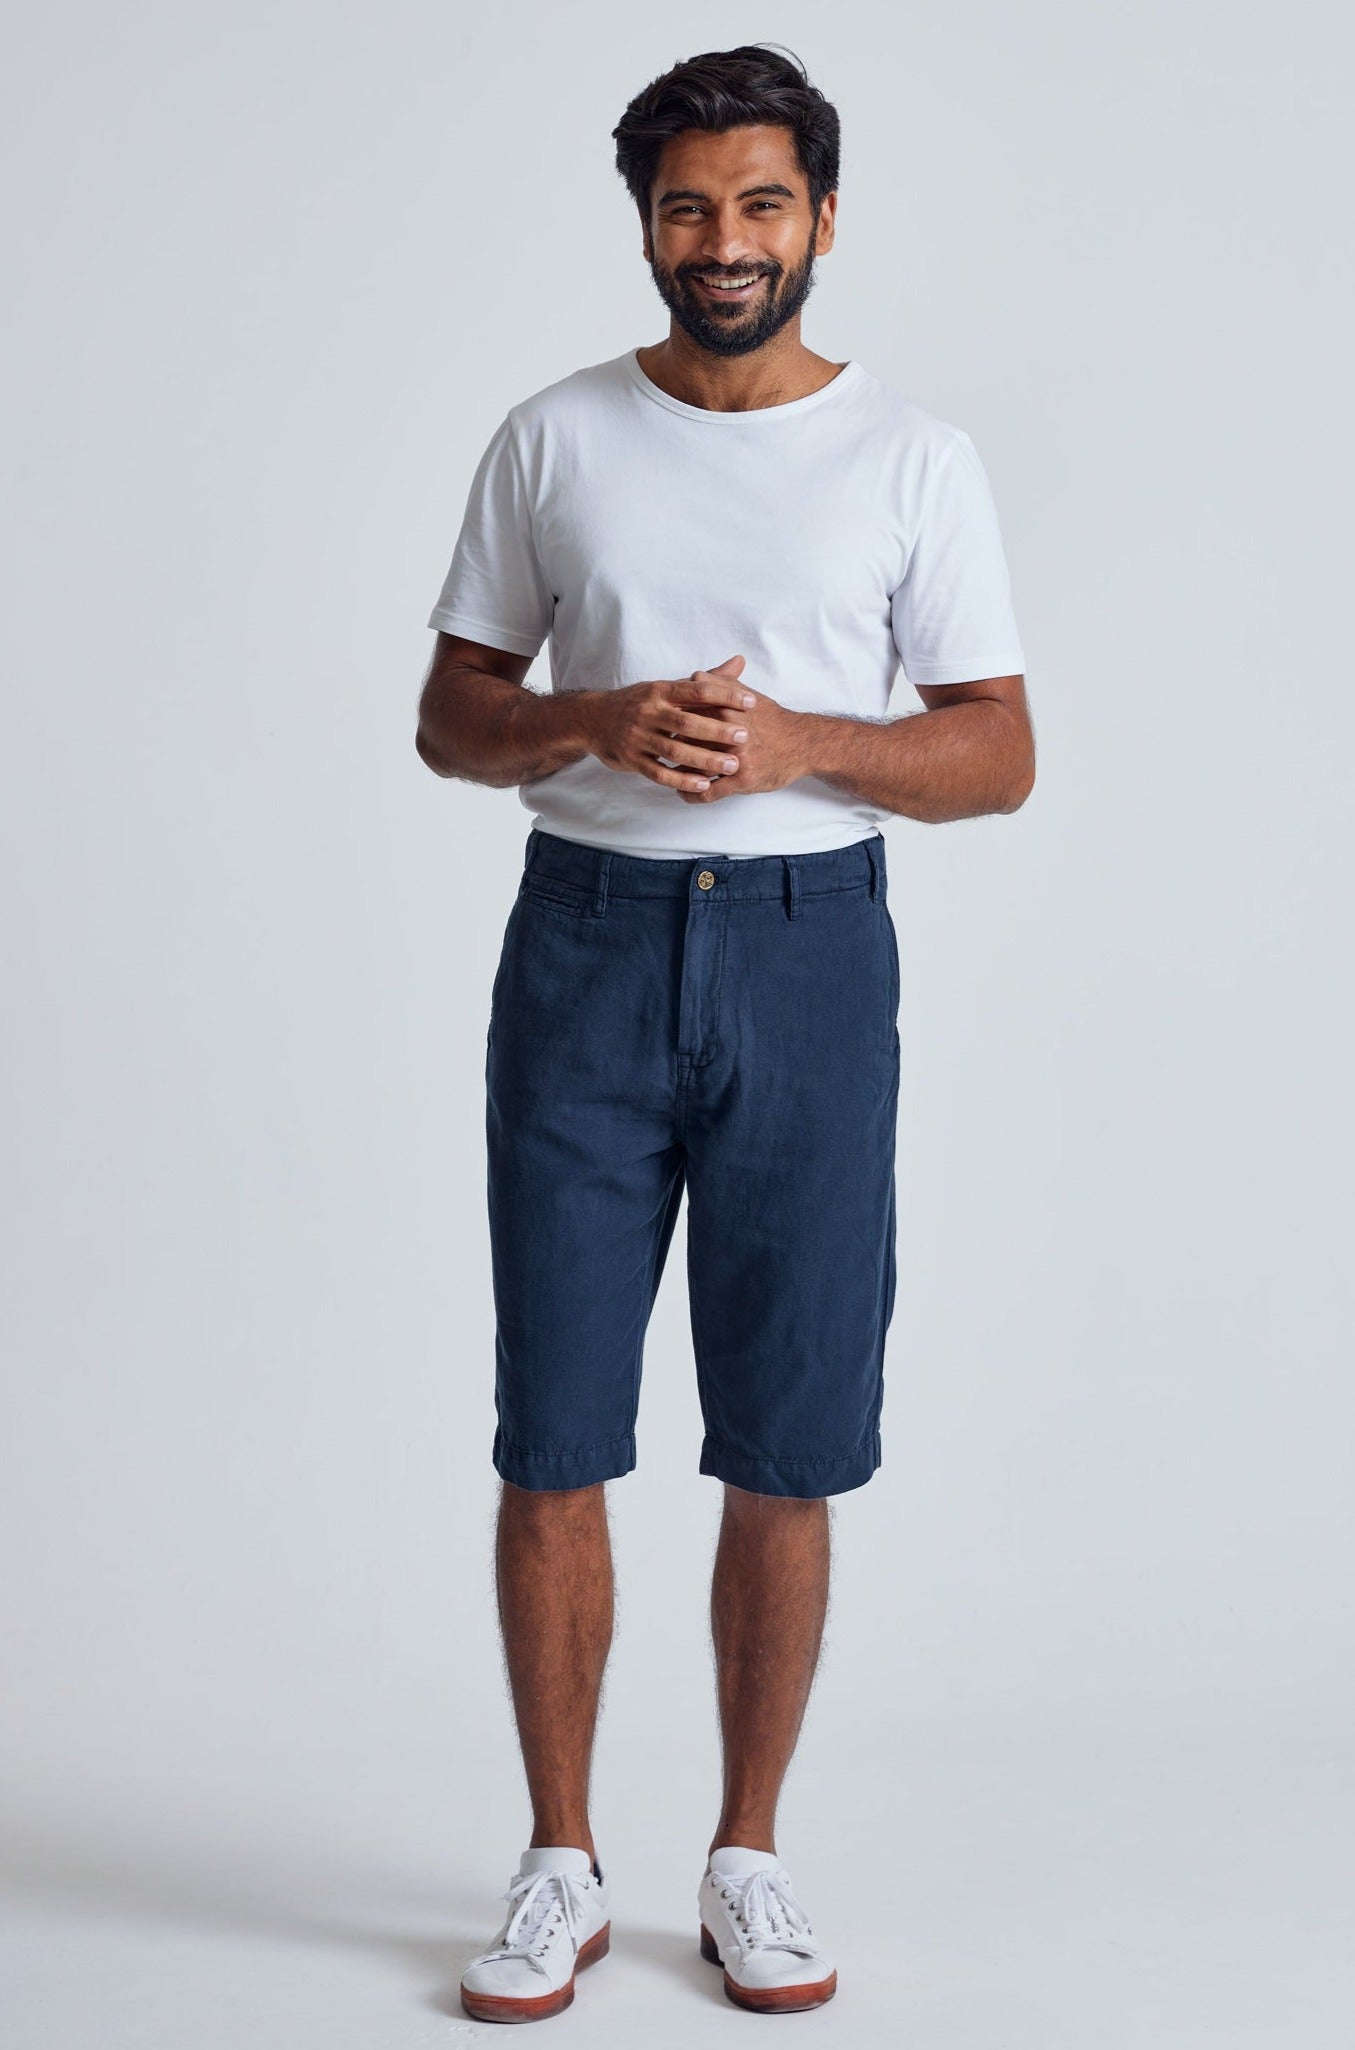 Navy The Bird Regular Fit Shorts - GOTS Certified Organic Cotton and Linen